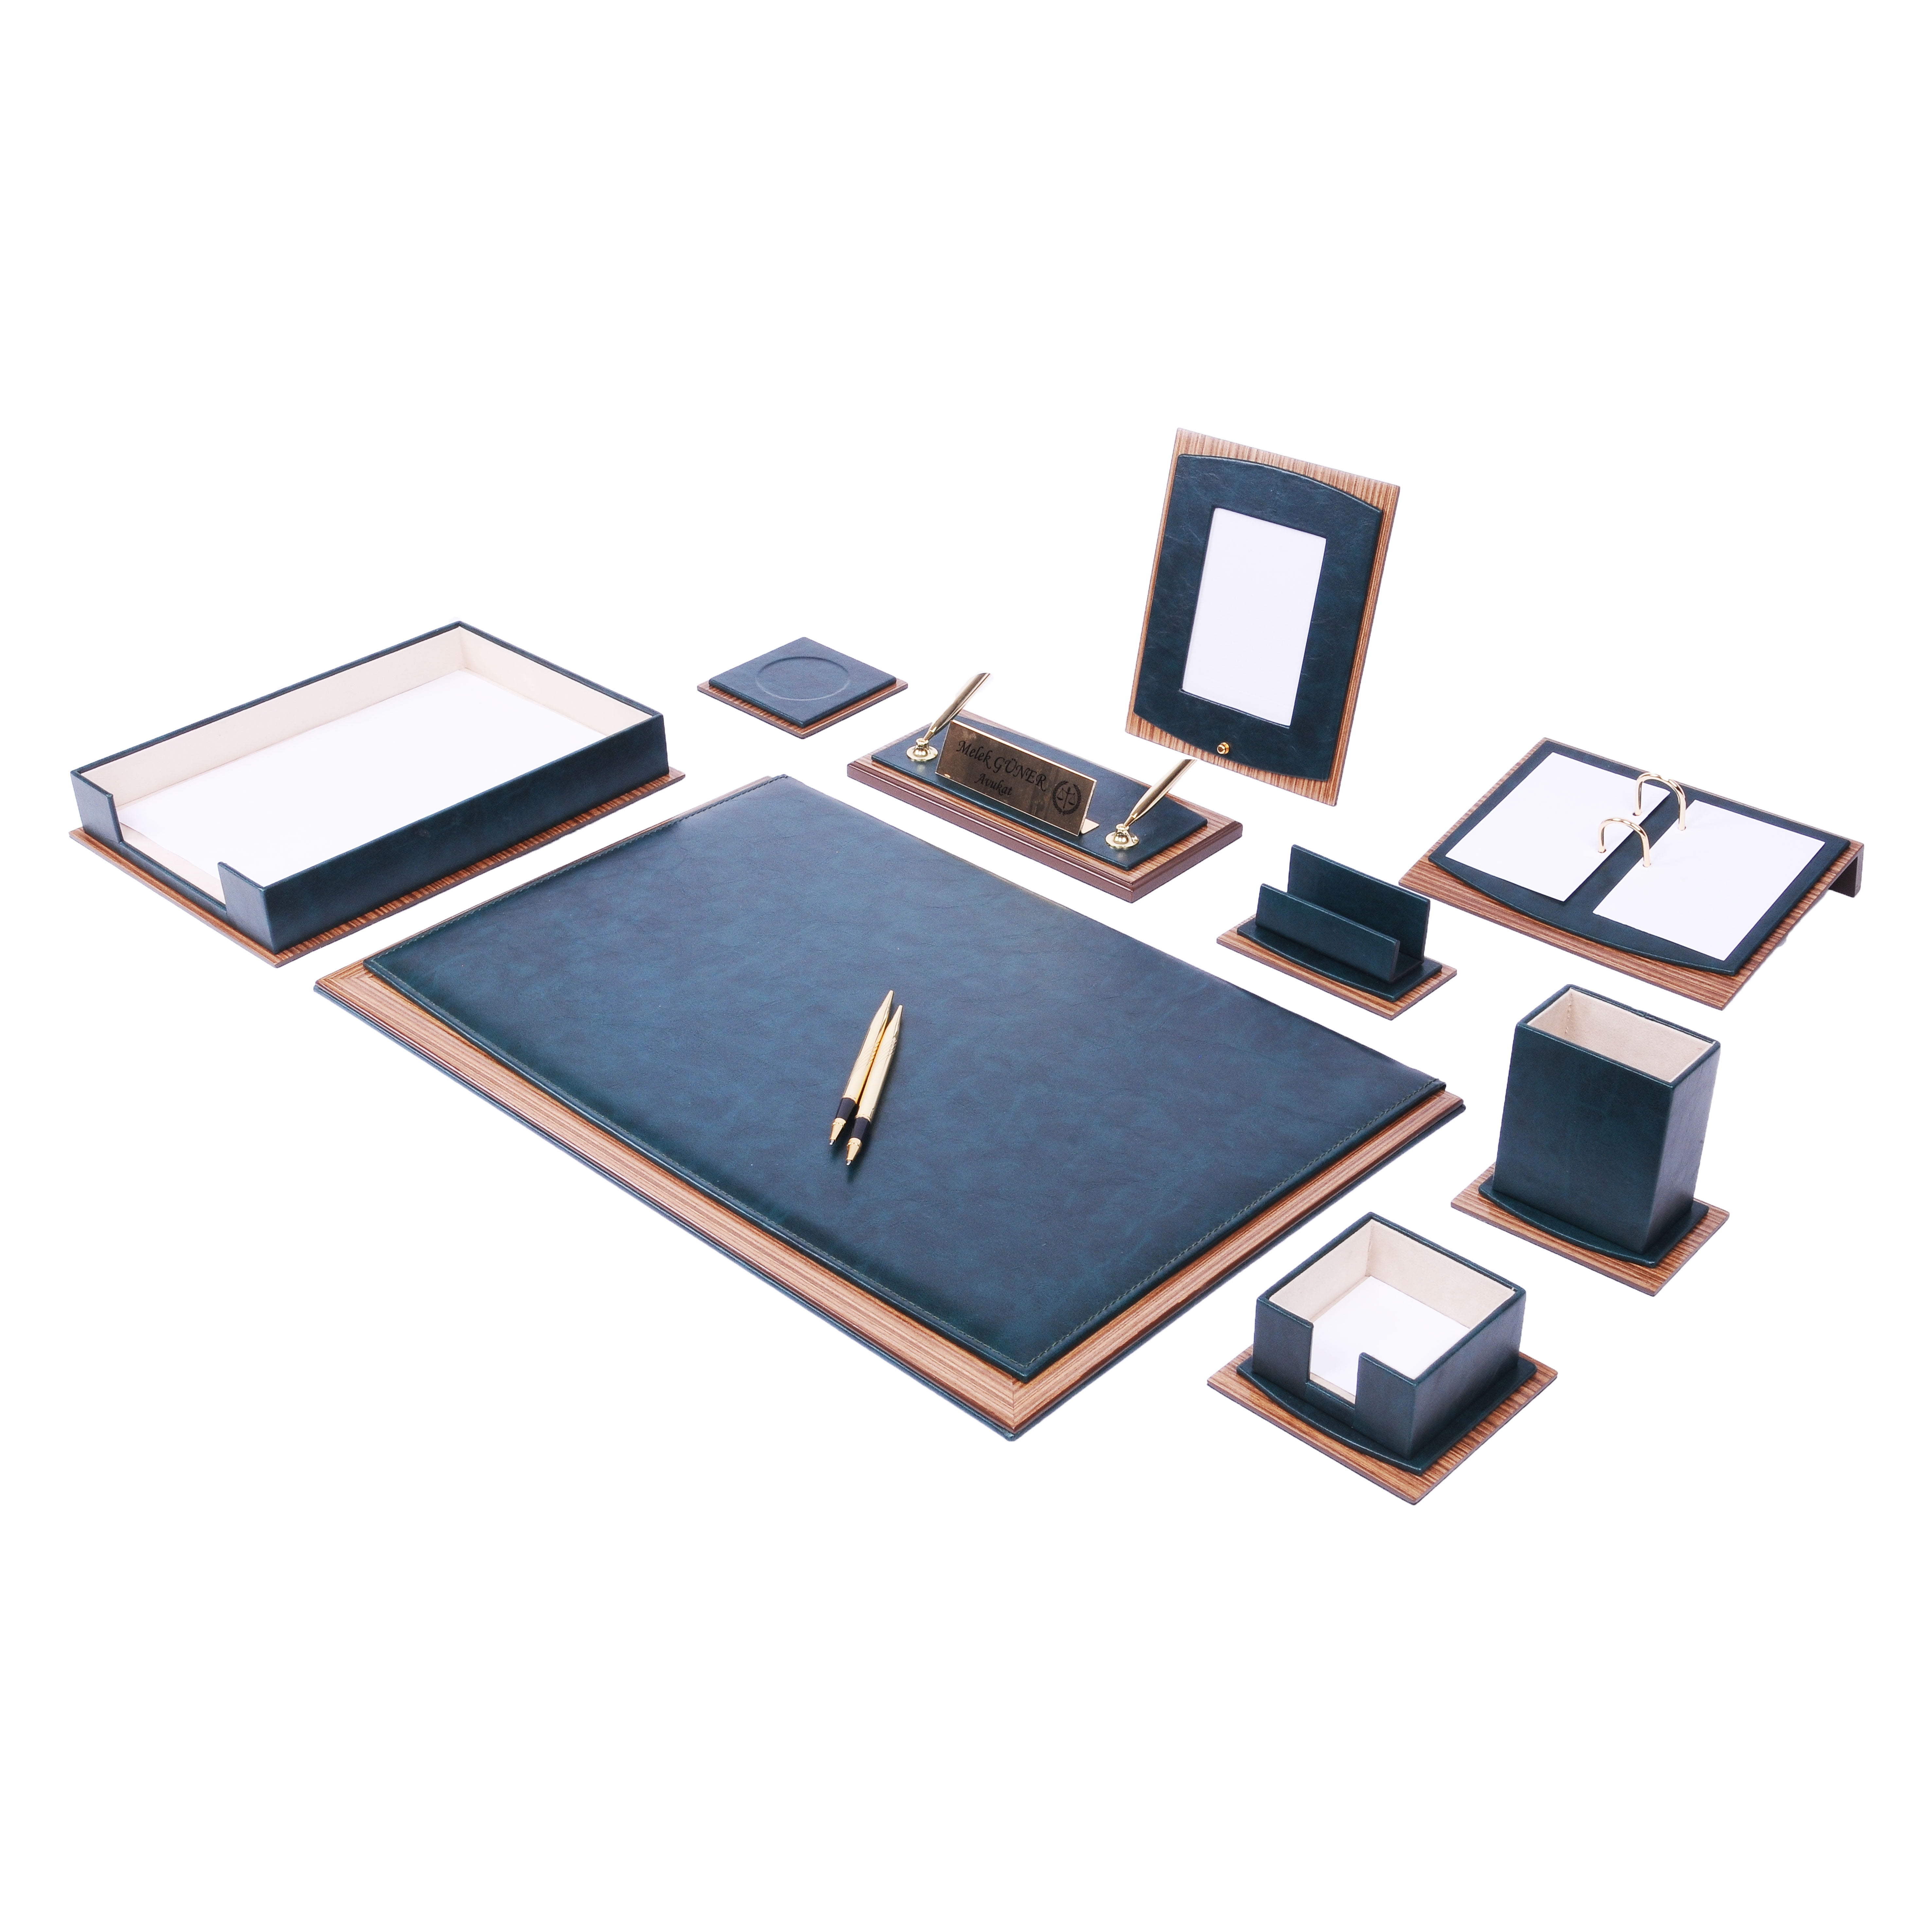 MOOGCO Desk Organizers - Desk Accessories - Leather Desk Organizer - Bonded Leather Set - Office Desk Accessories - Home Office Accessories - Desk